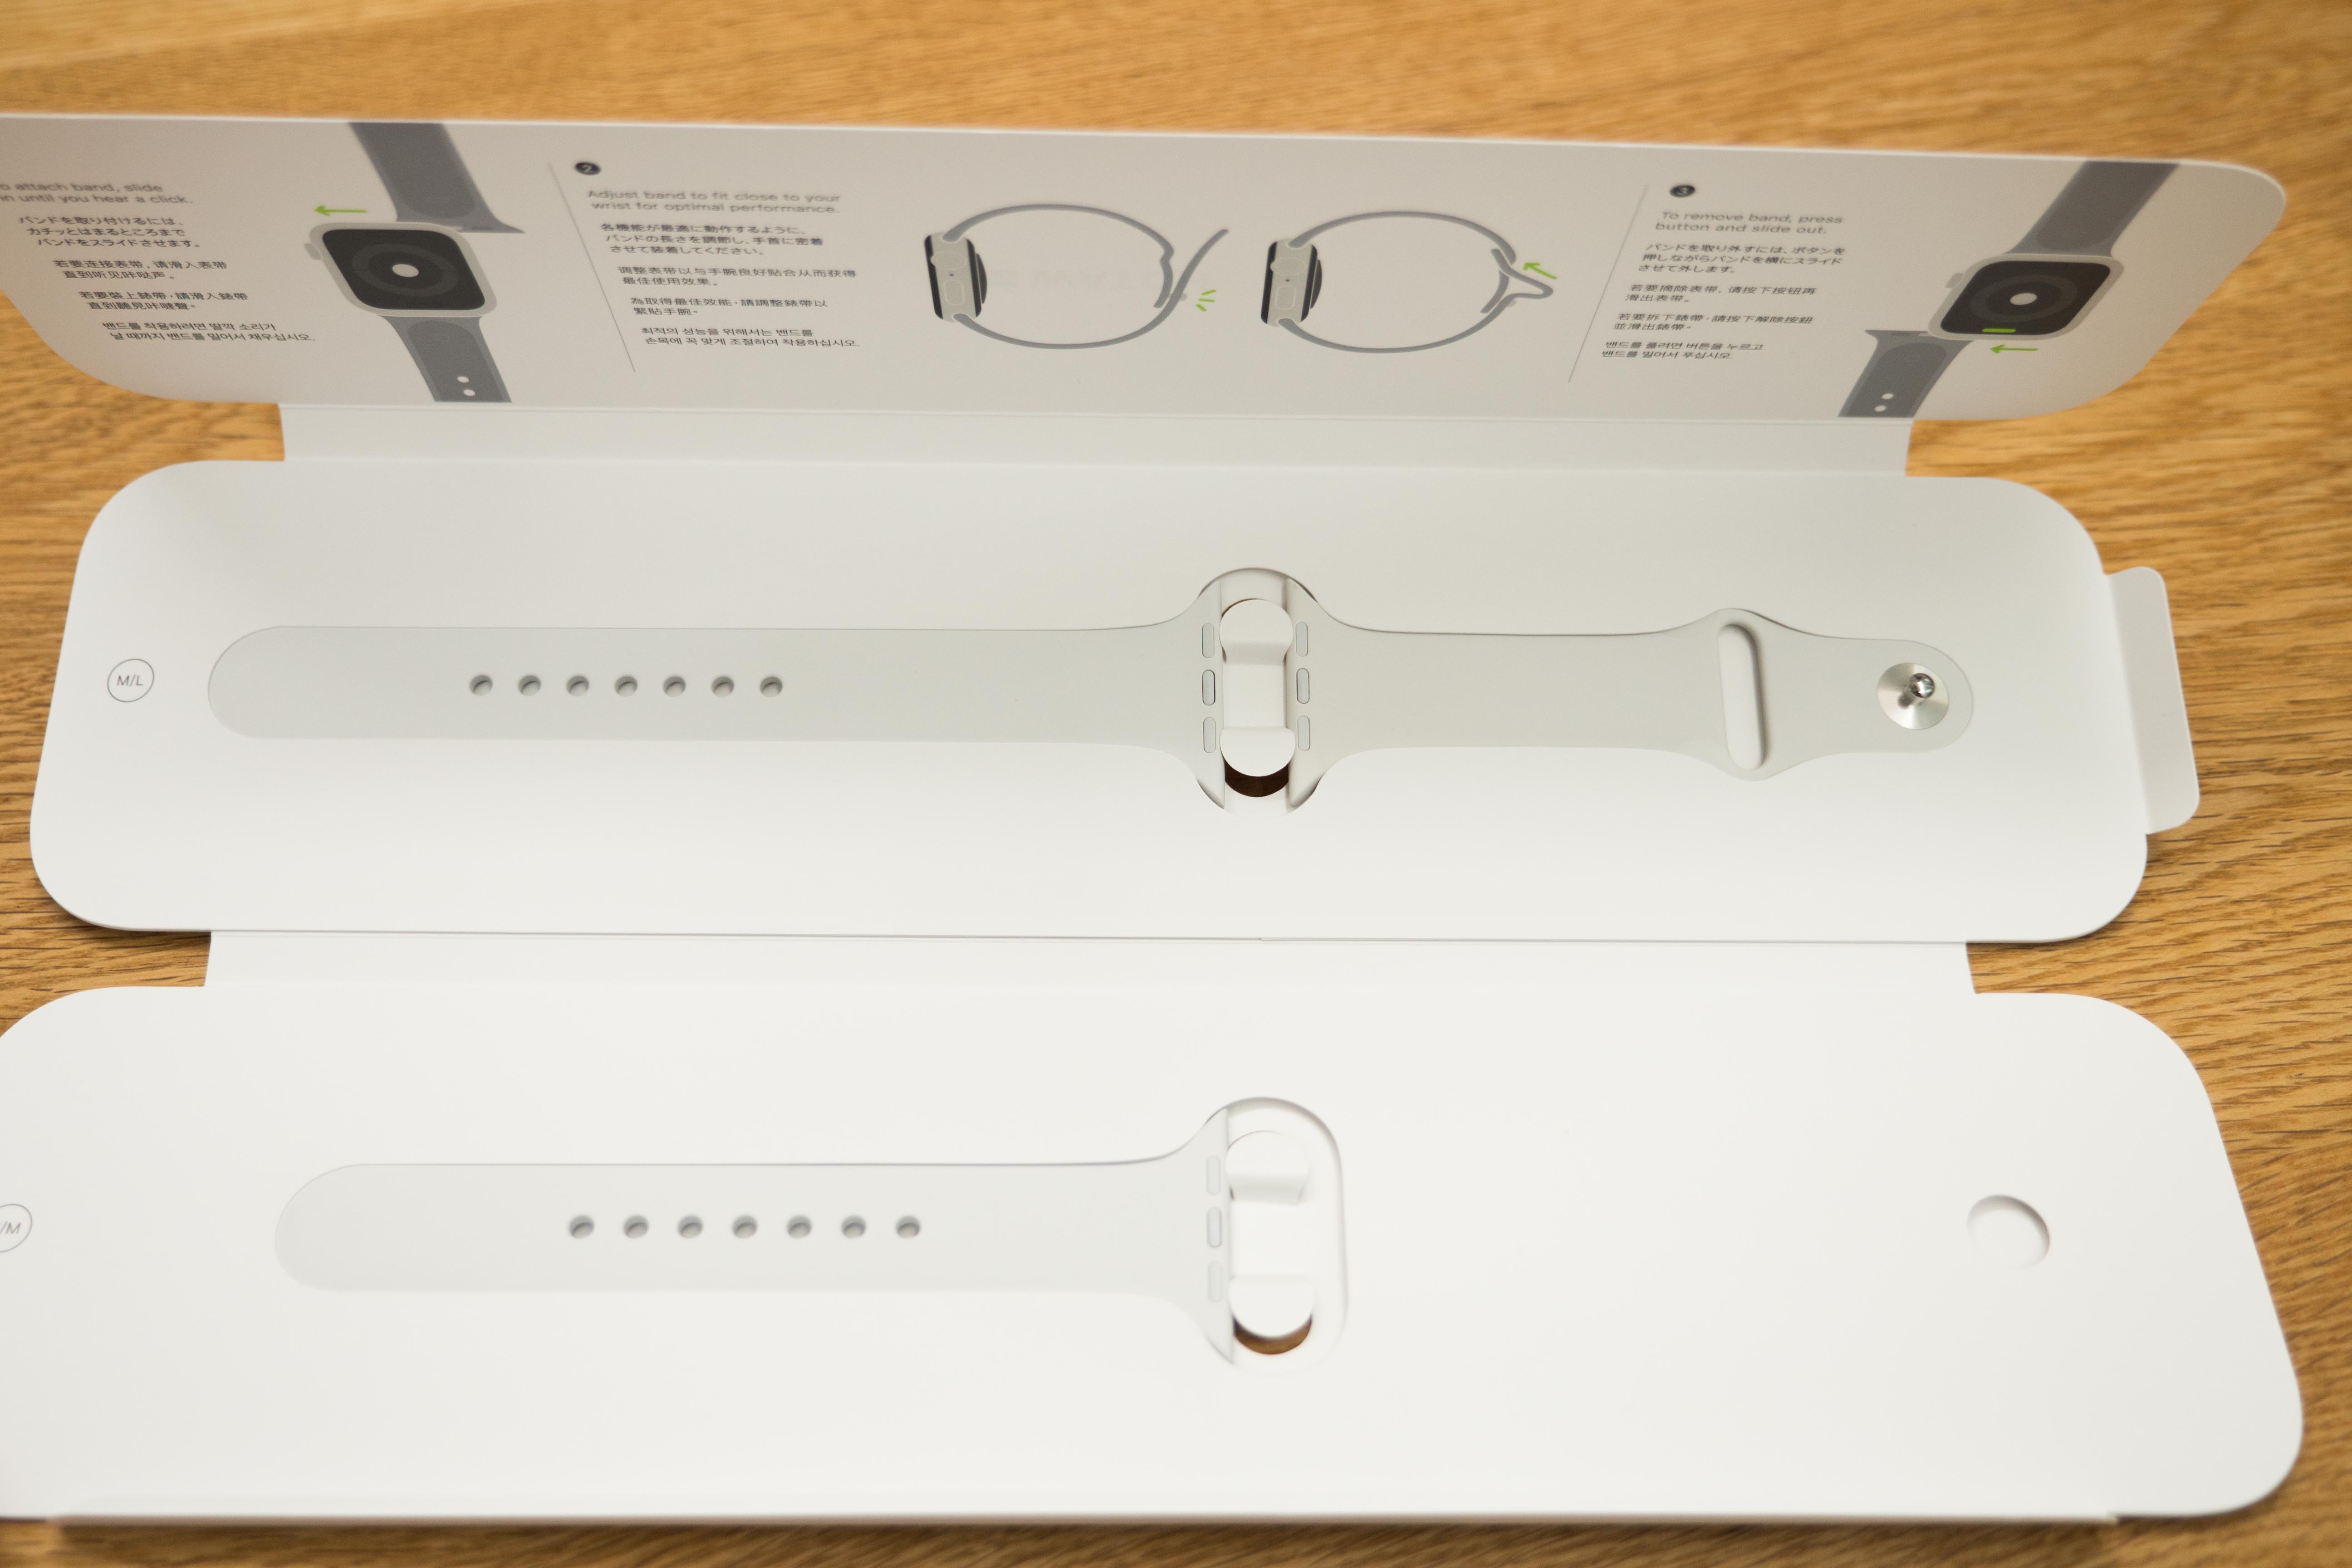 Apple Watch Series 4 알루미늄 셀룰러 모델 개봉기